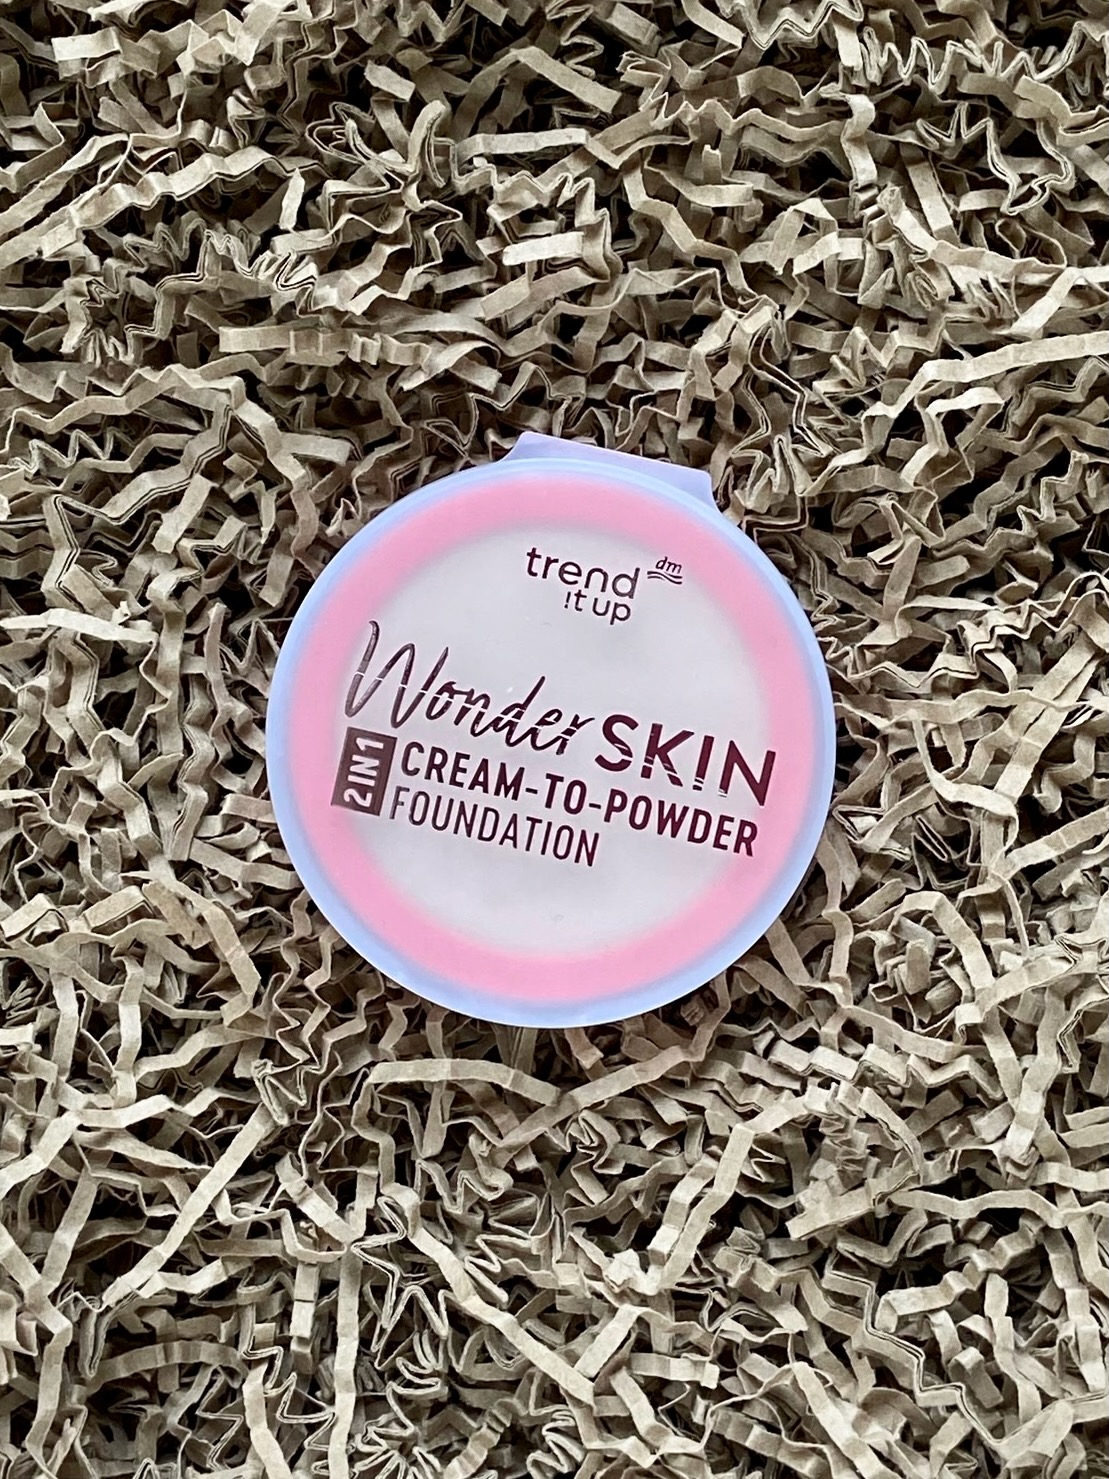 Trend it up Wonderskin Cream-to-Powder Foundation